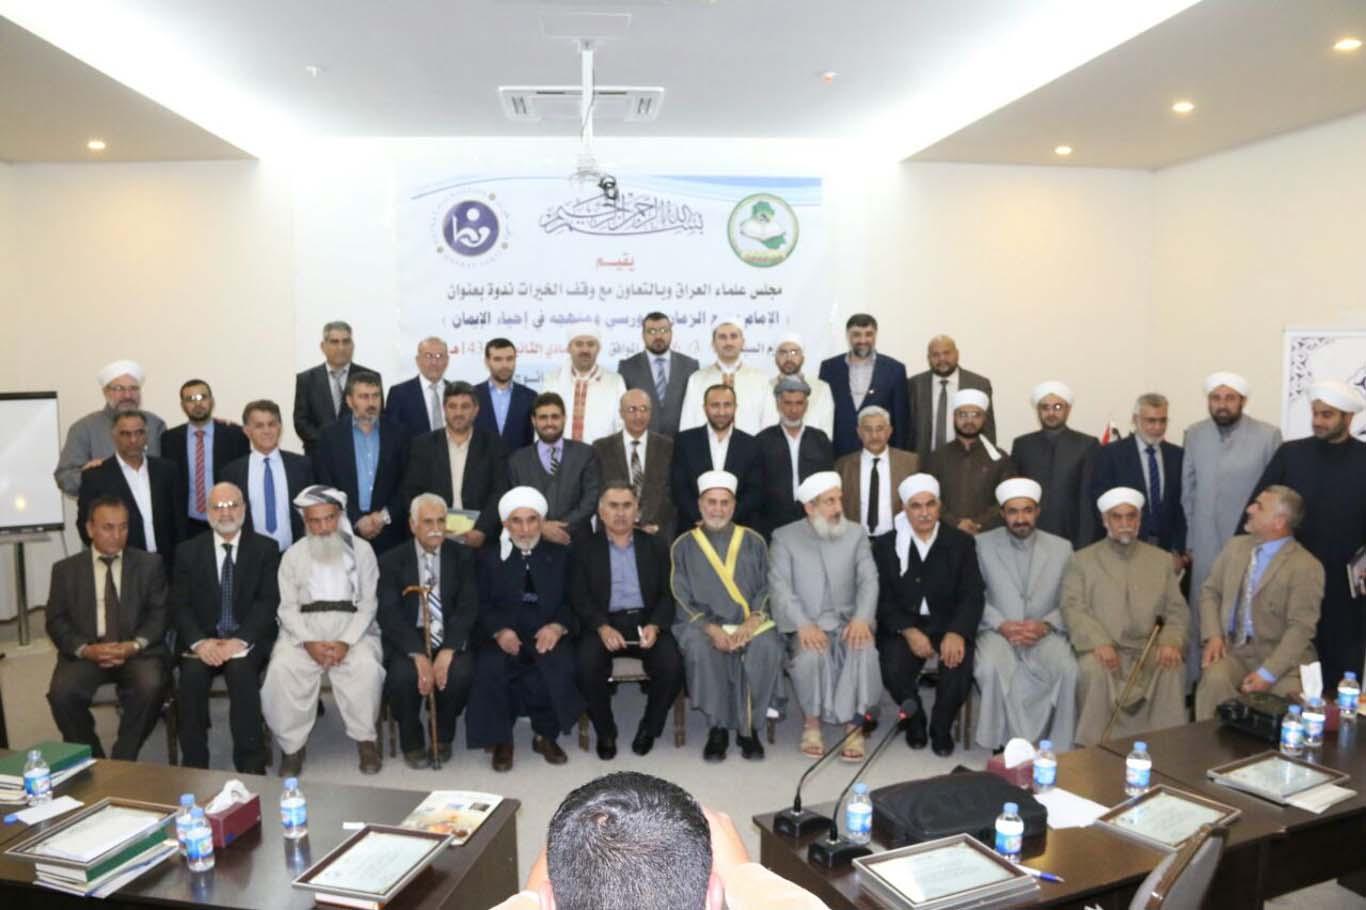 Bediüzzaman Hazretleri için Erbil'de konferans düzenlediler